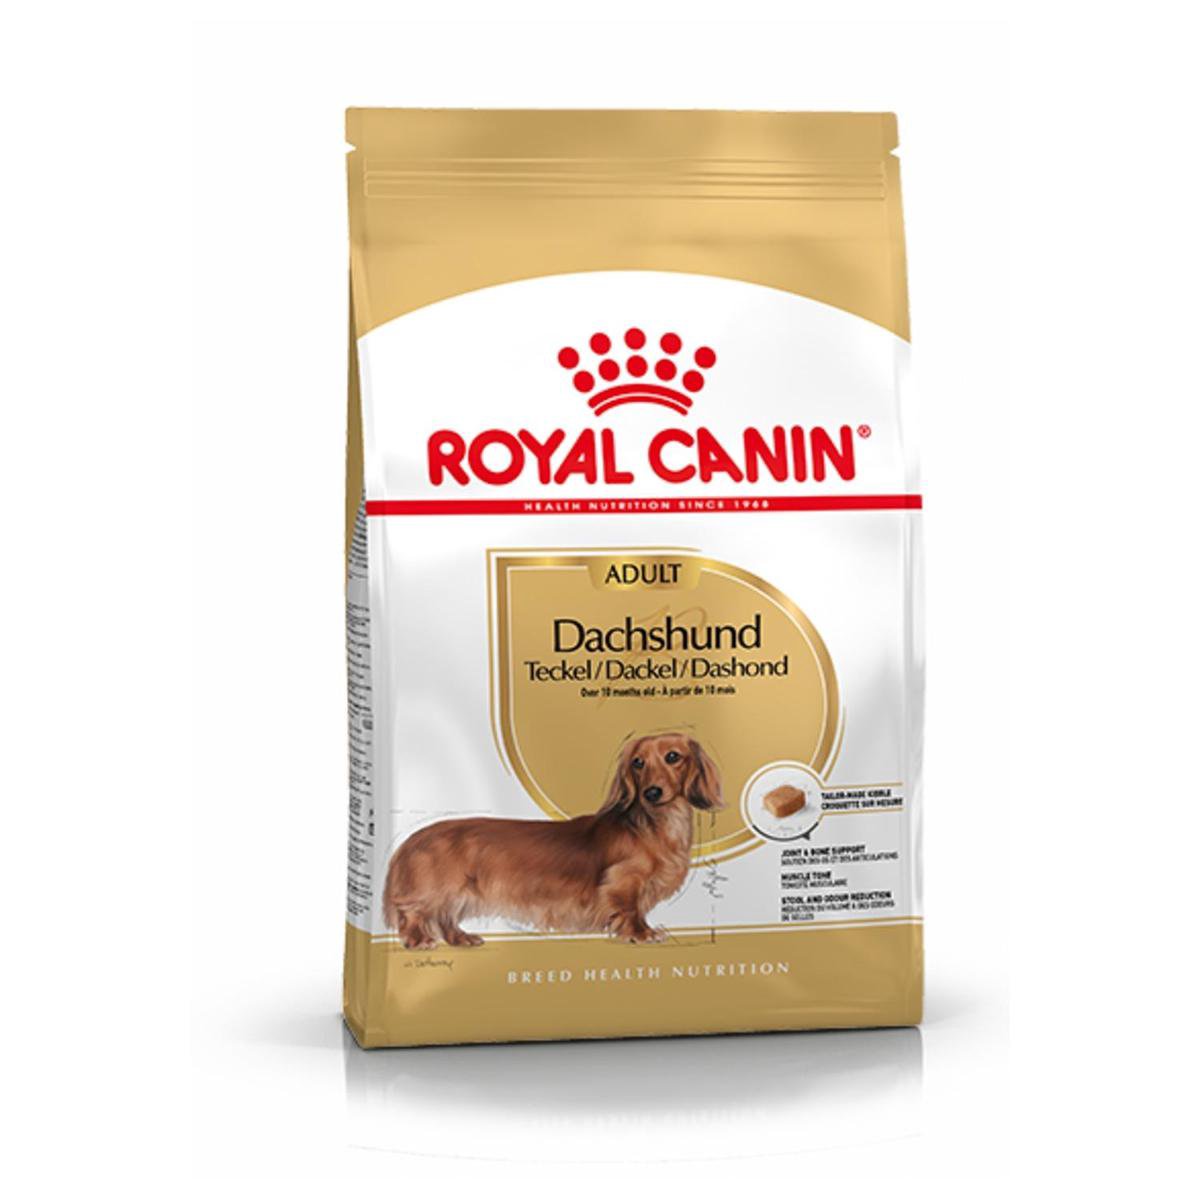 Royal Canin Dachshund/Teckel Adult 7.5 KG | bol.com